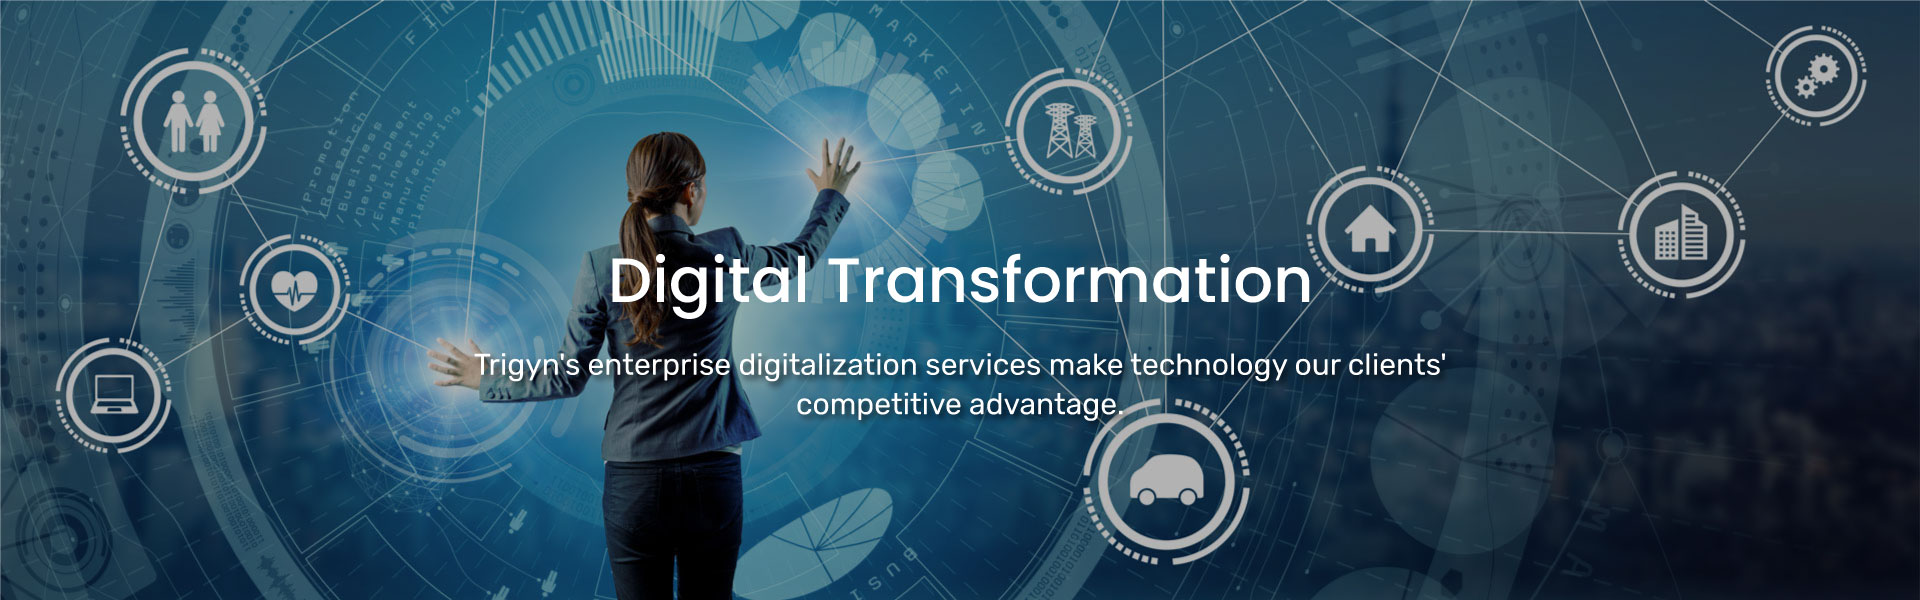 Trigyn’s Digital Transformation Services